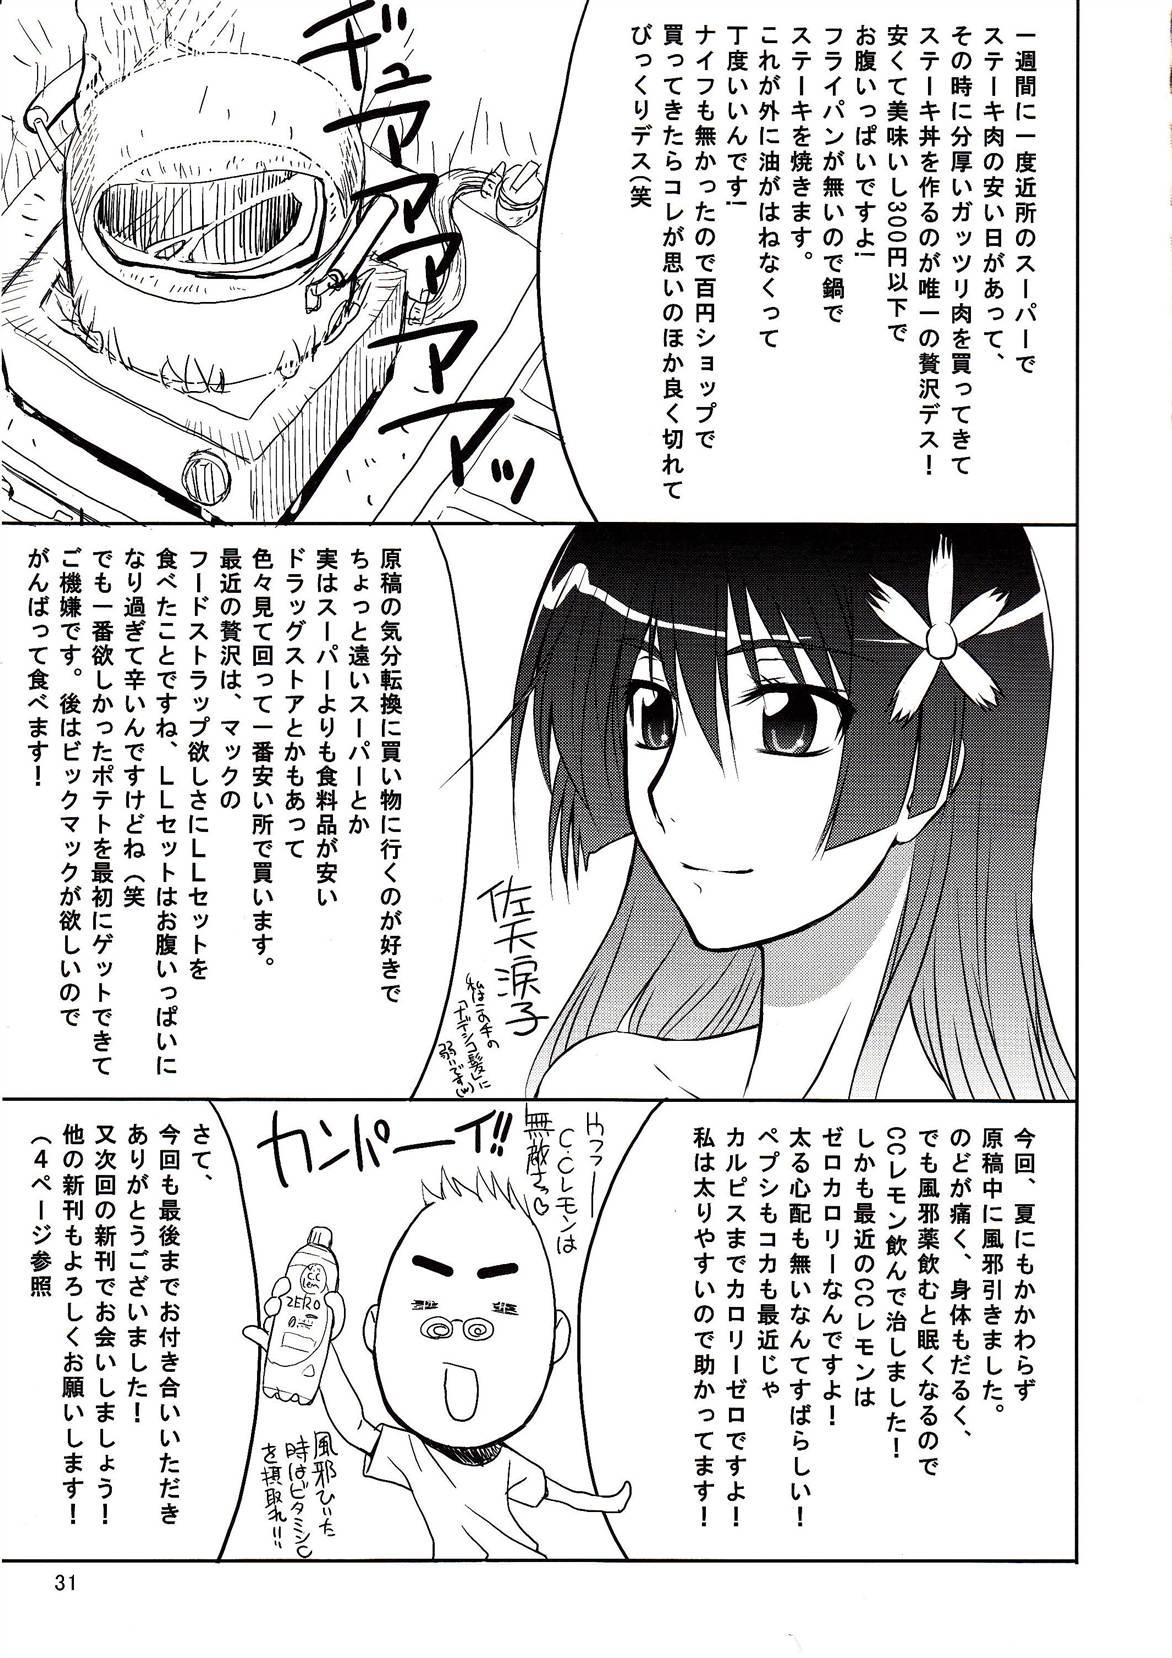 Moe Doujinshi Page 31 Of 35 toaru majutsu no index hentai haven, Touma x Mi...